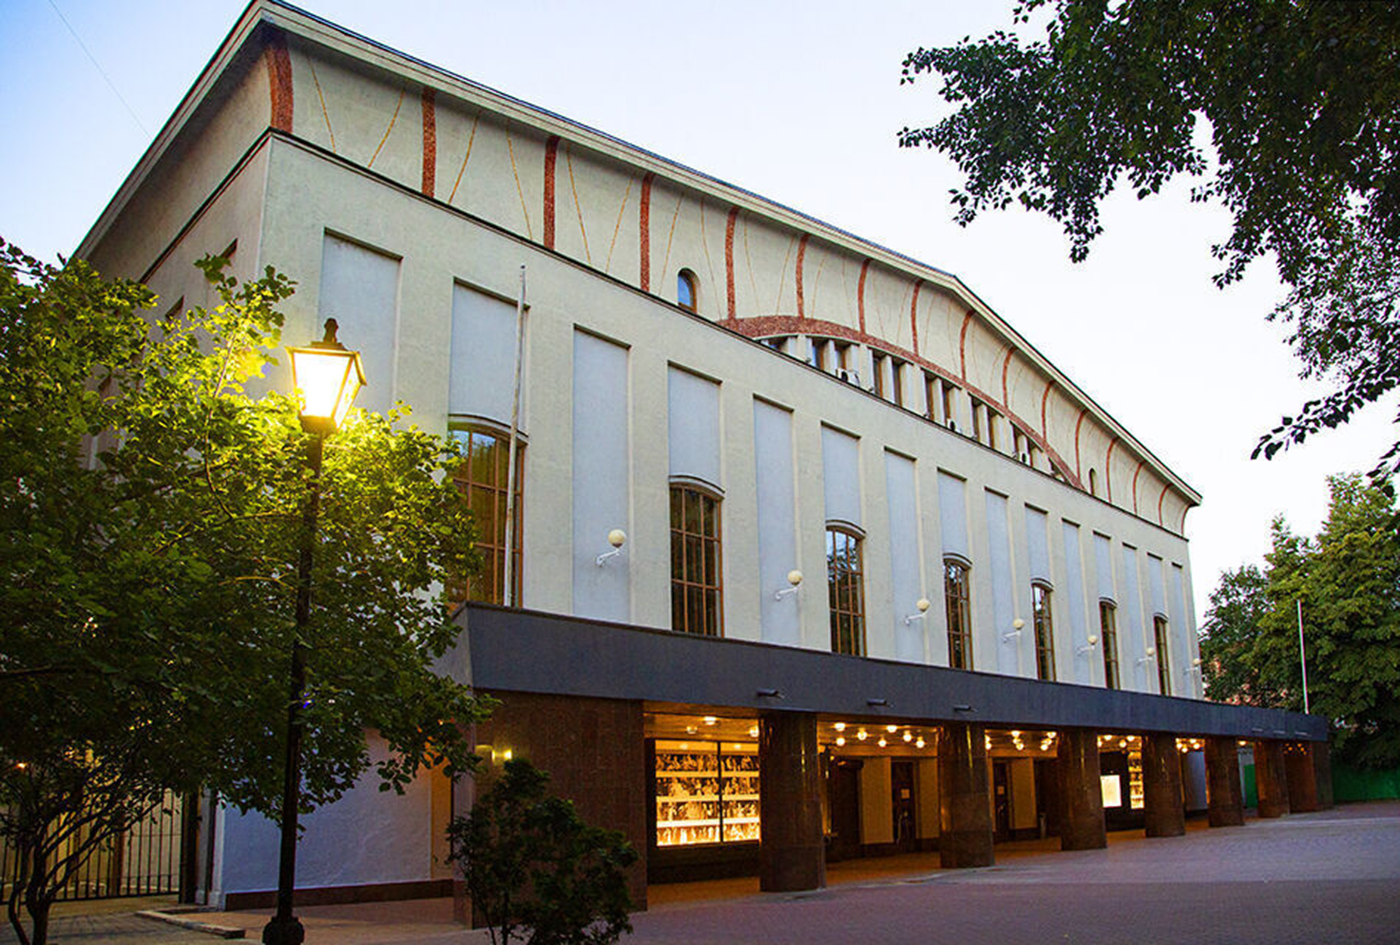 Моссовета театр официальный фото центрального входа